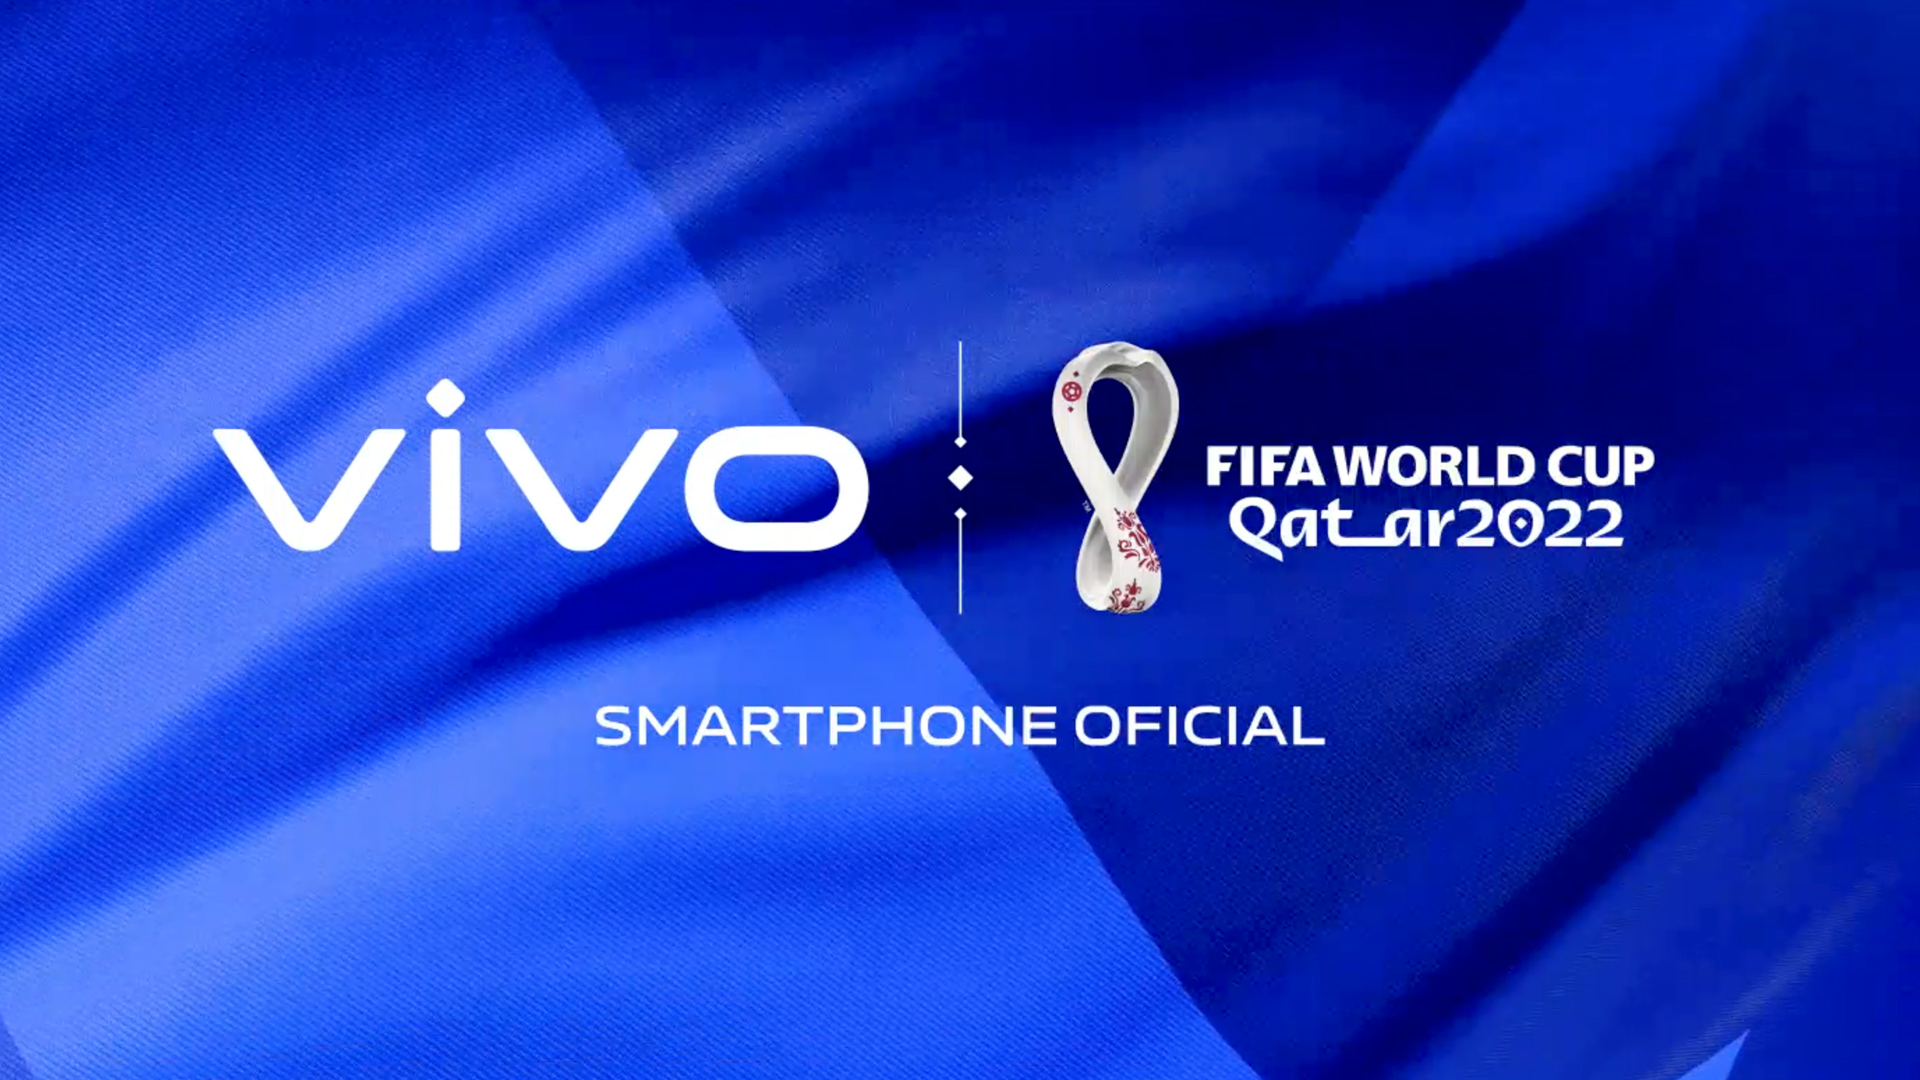 vivo reafirma su postura como Smartphone Oficial de la Copa Mundial de la FIFA Qatar 2022™